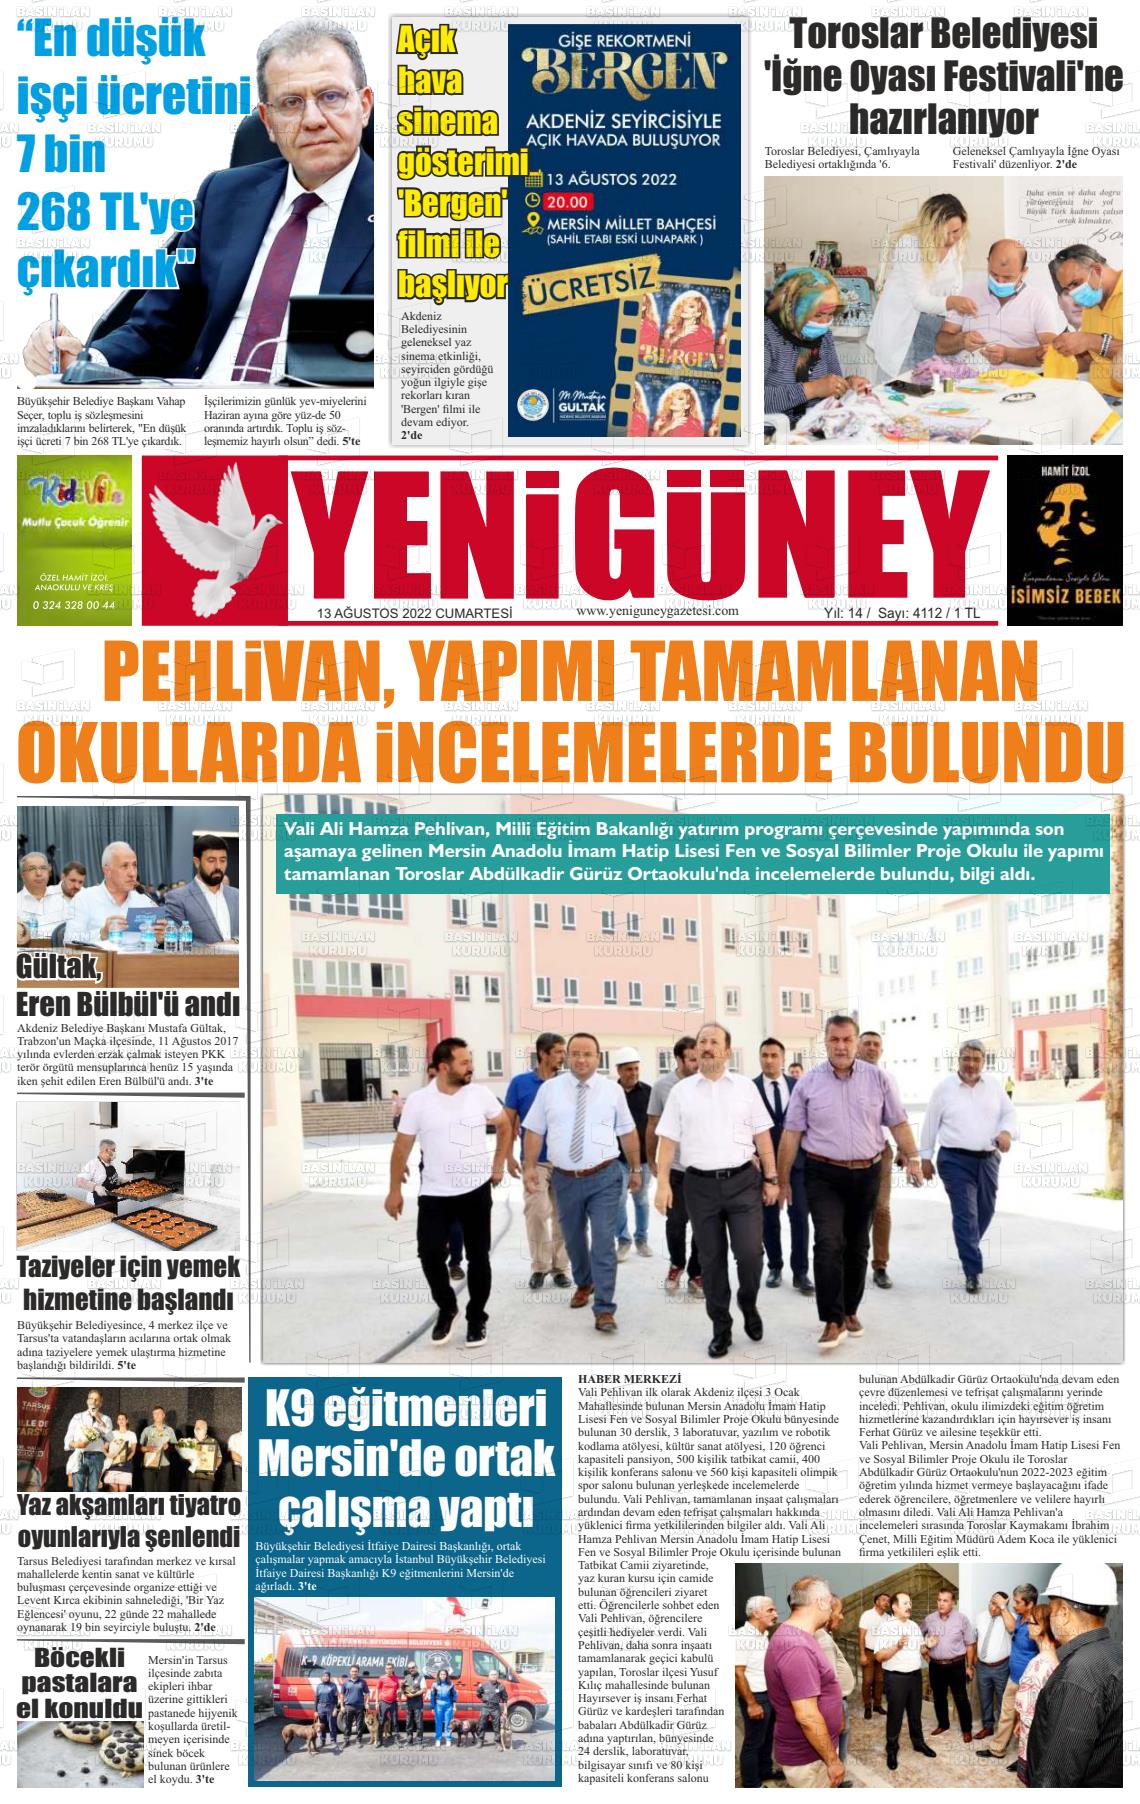 13 Ağustos 2022 Yeni Güney Gazete Manşeti